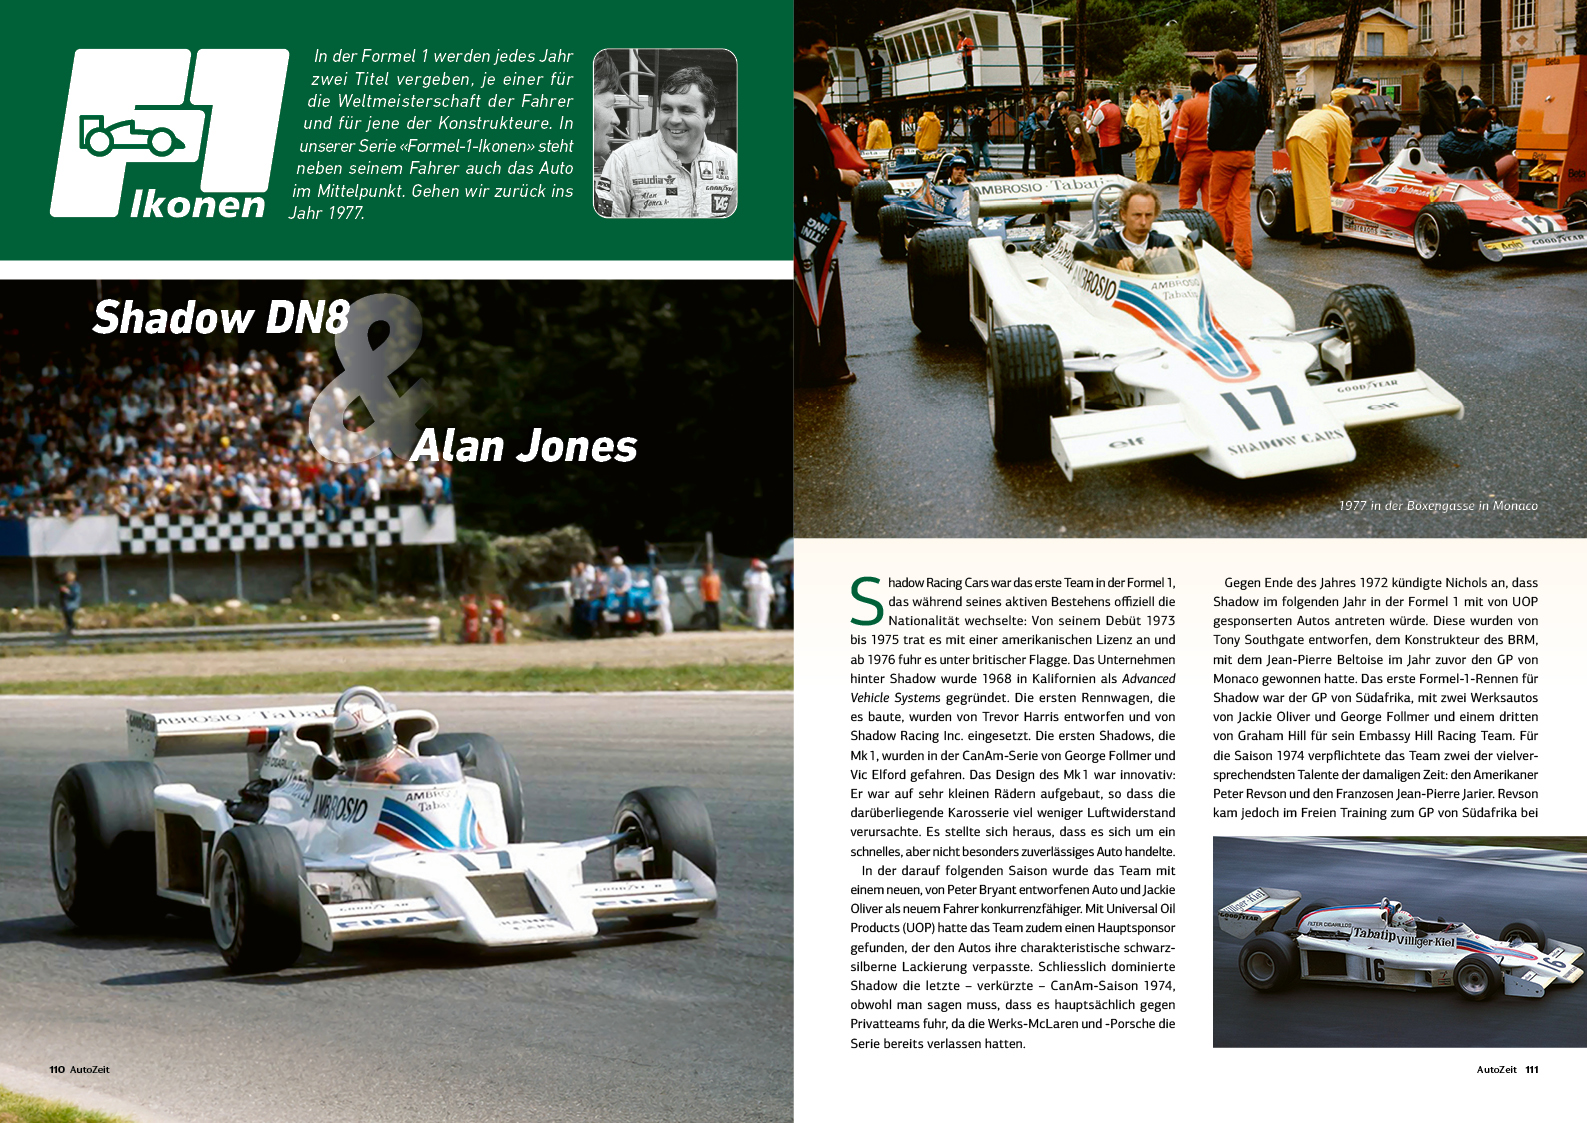 F1: Alan Jones, Shadow DN8